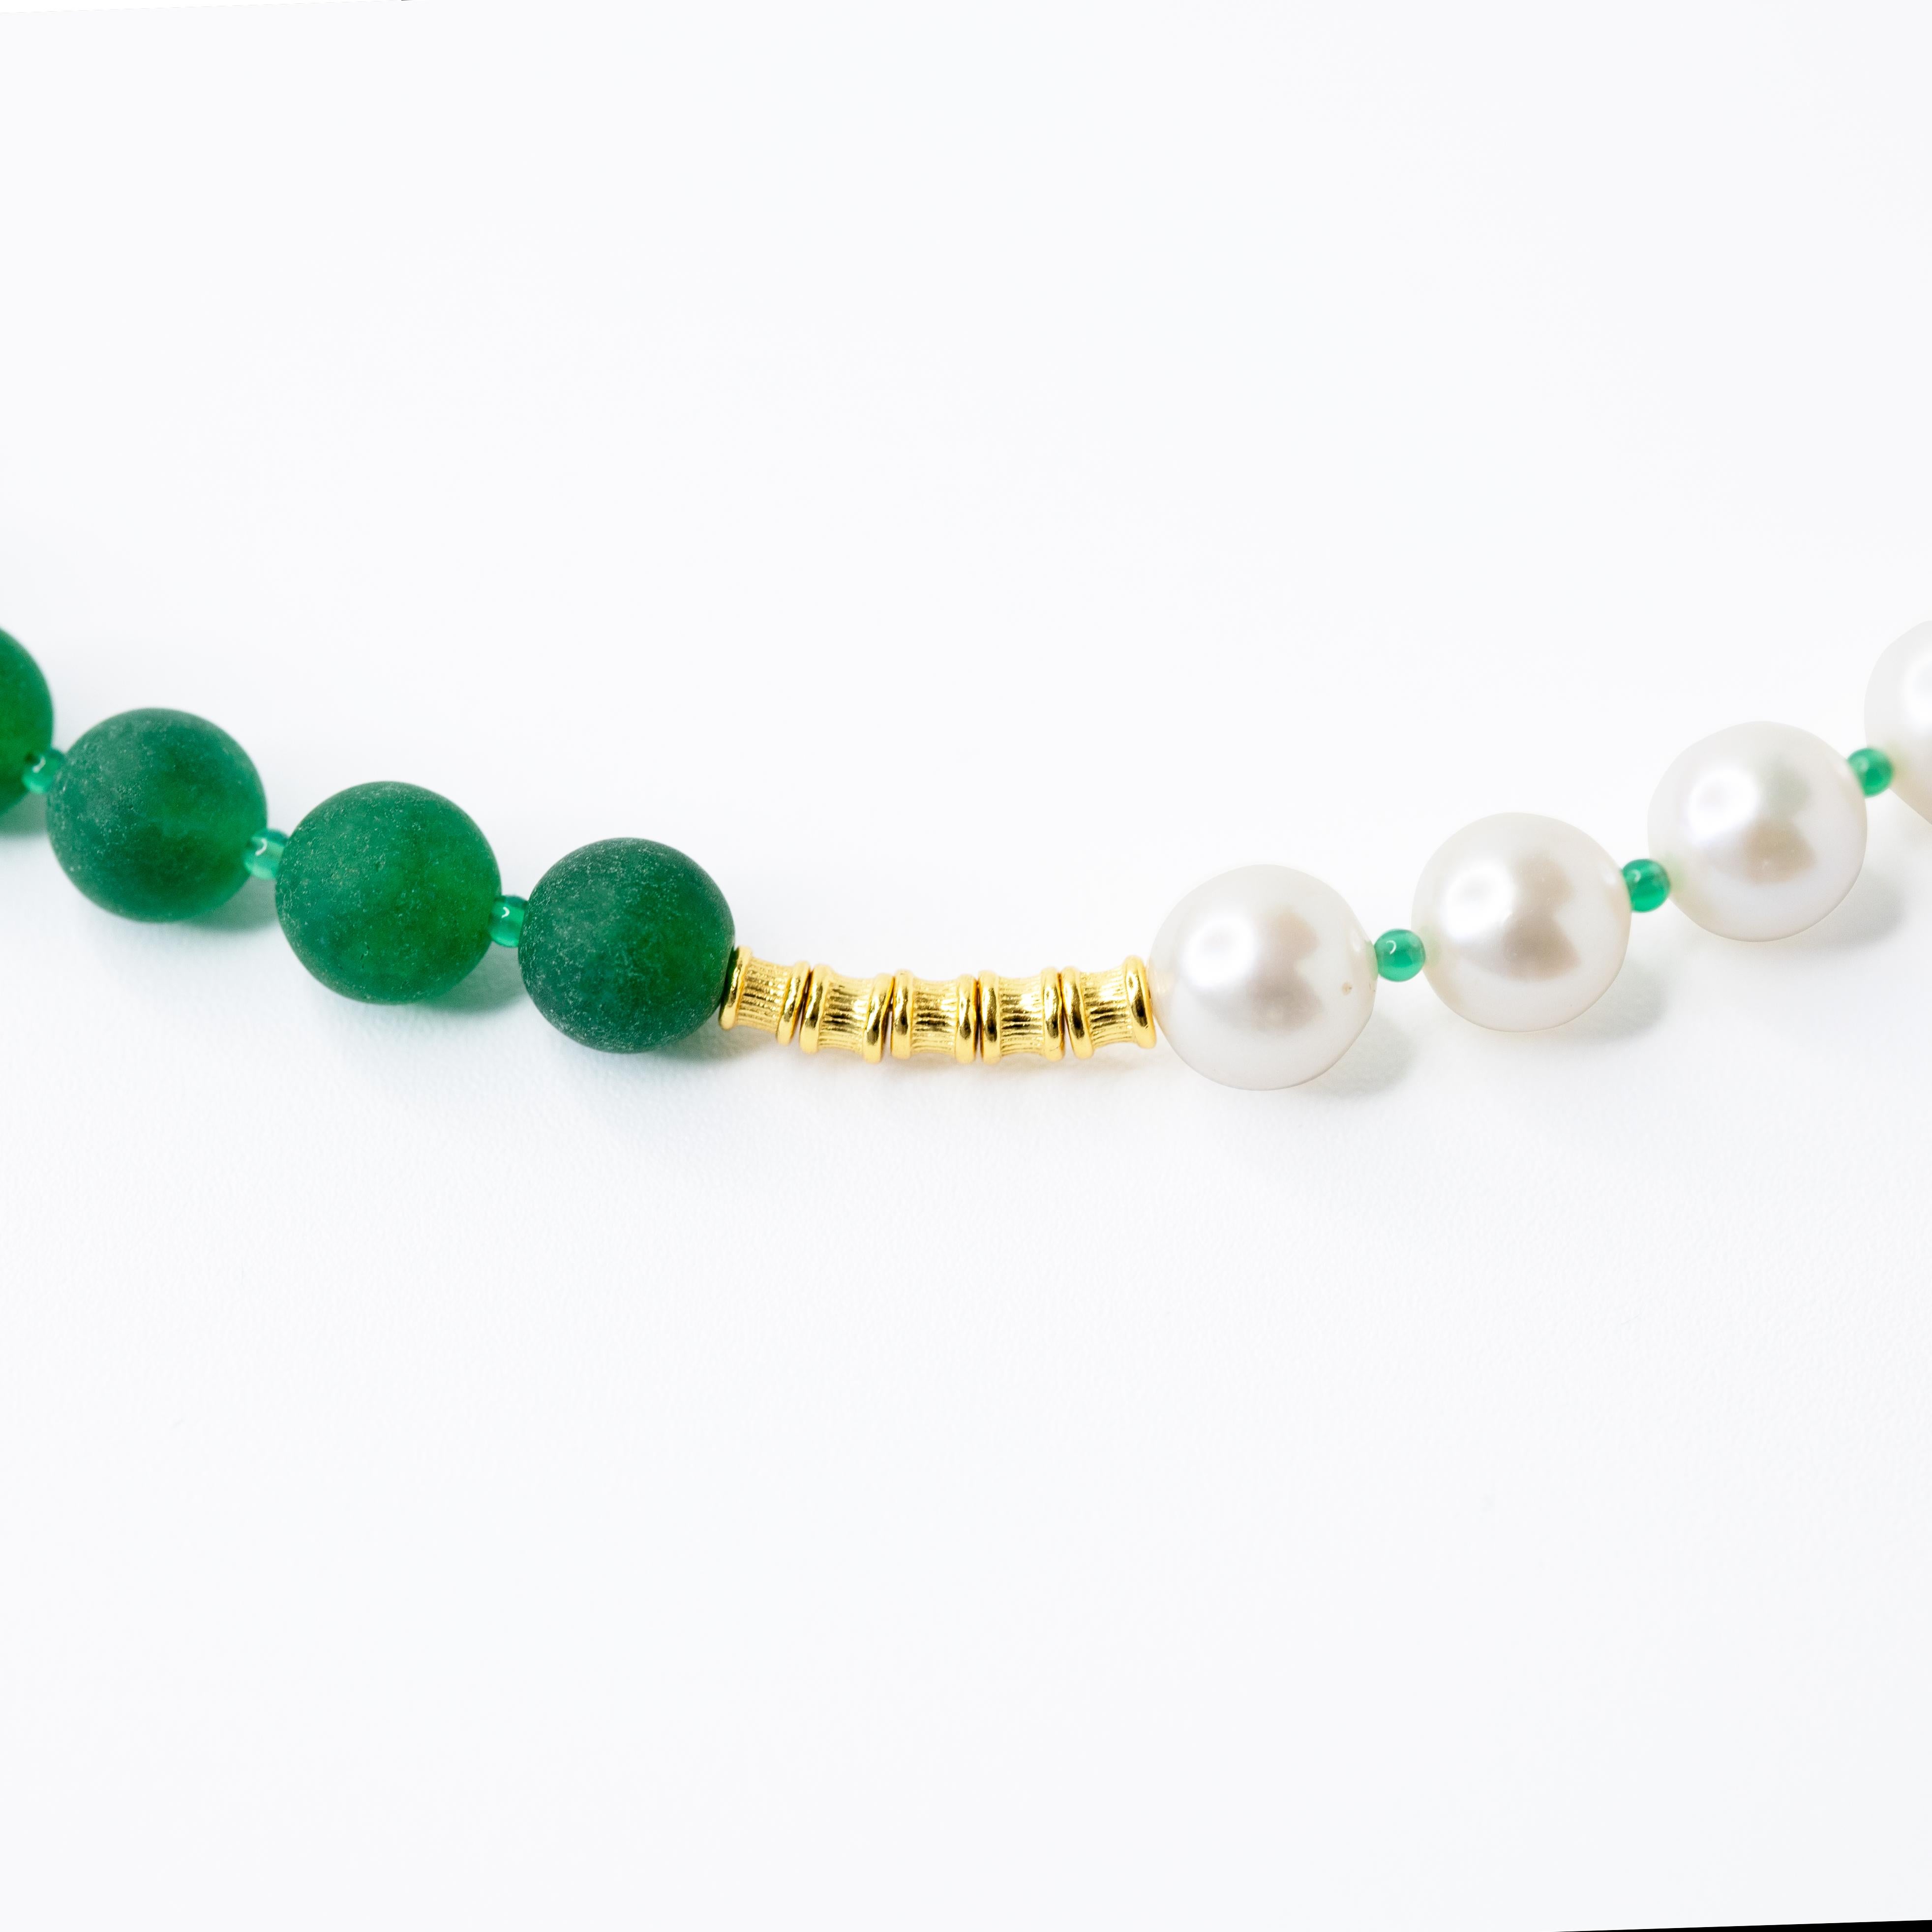 Diese Halskette ist aus natürlichen Süßwasserperlen gefertigt,  Perlen aus Chalcedon und 22K vergoldetem Sterlingsilber, inspiriert durch das Ölgemälde 